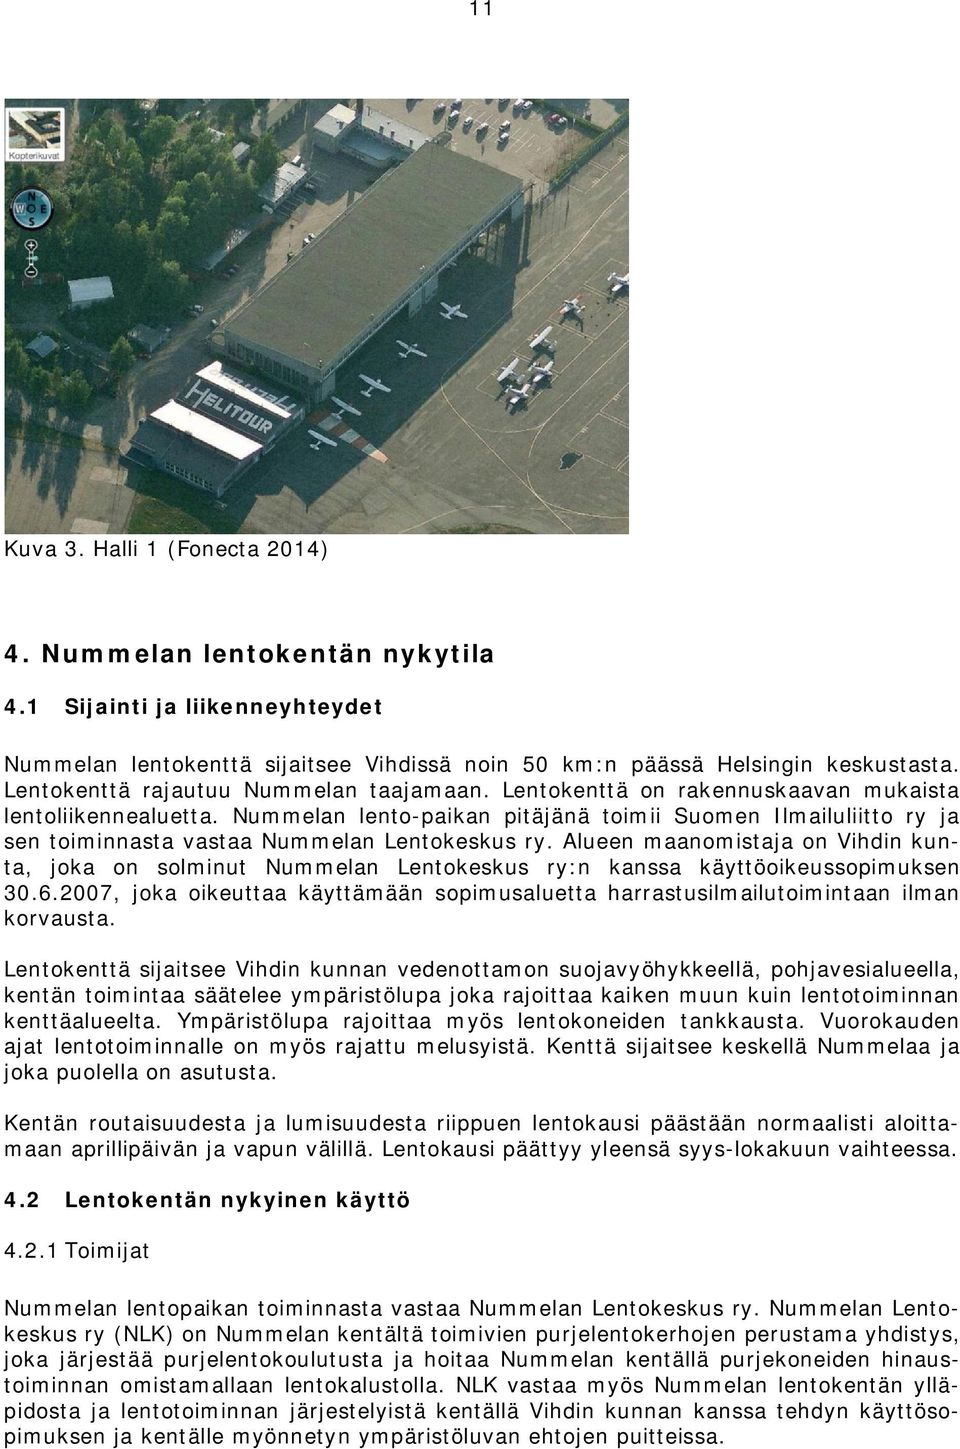 Nummelan lento-paikan pitäjänä toimii Suomen Ilmailuliitto ry ja sen toiminnasta vastaa Nummelan Lentokeskus ry.